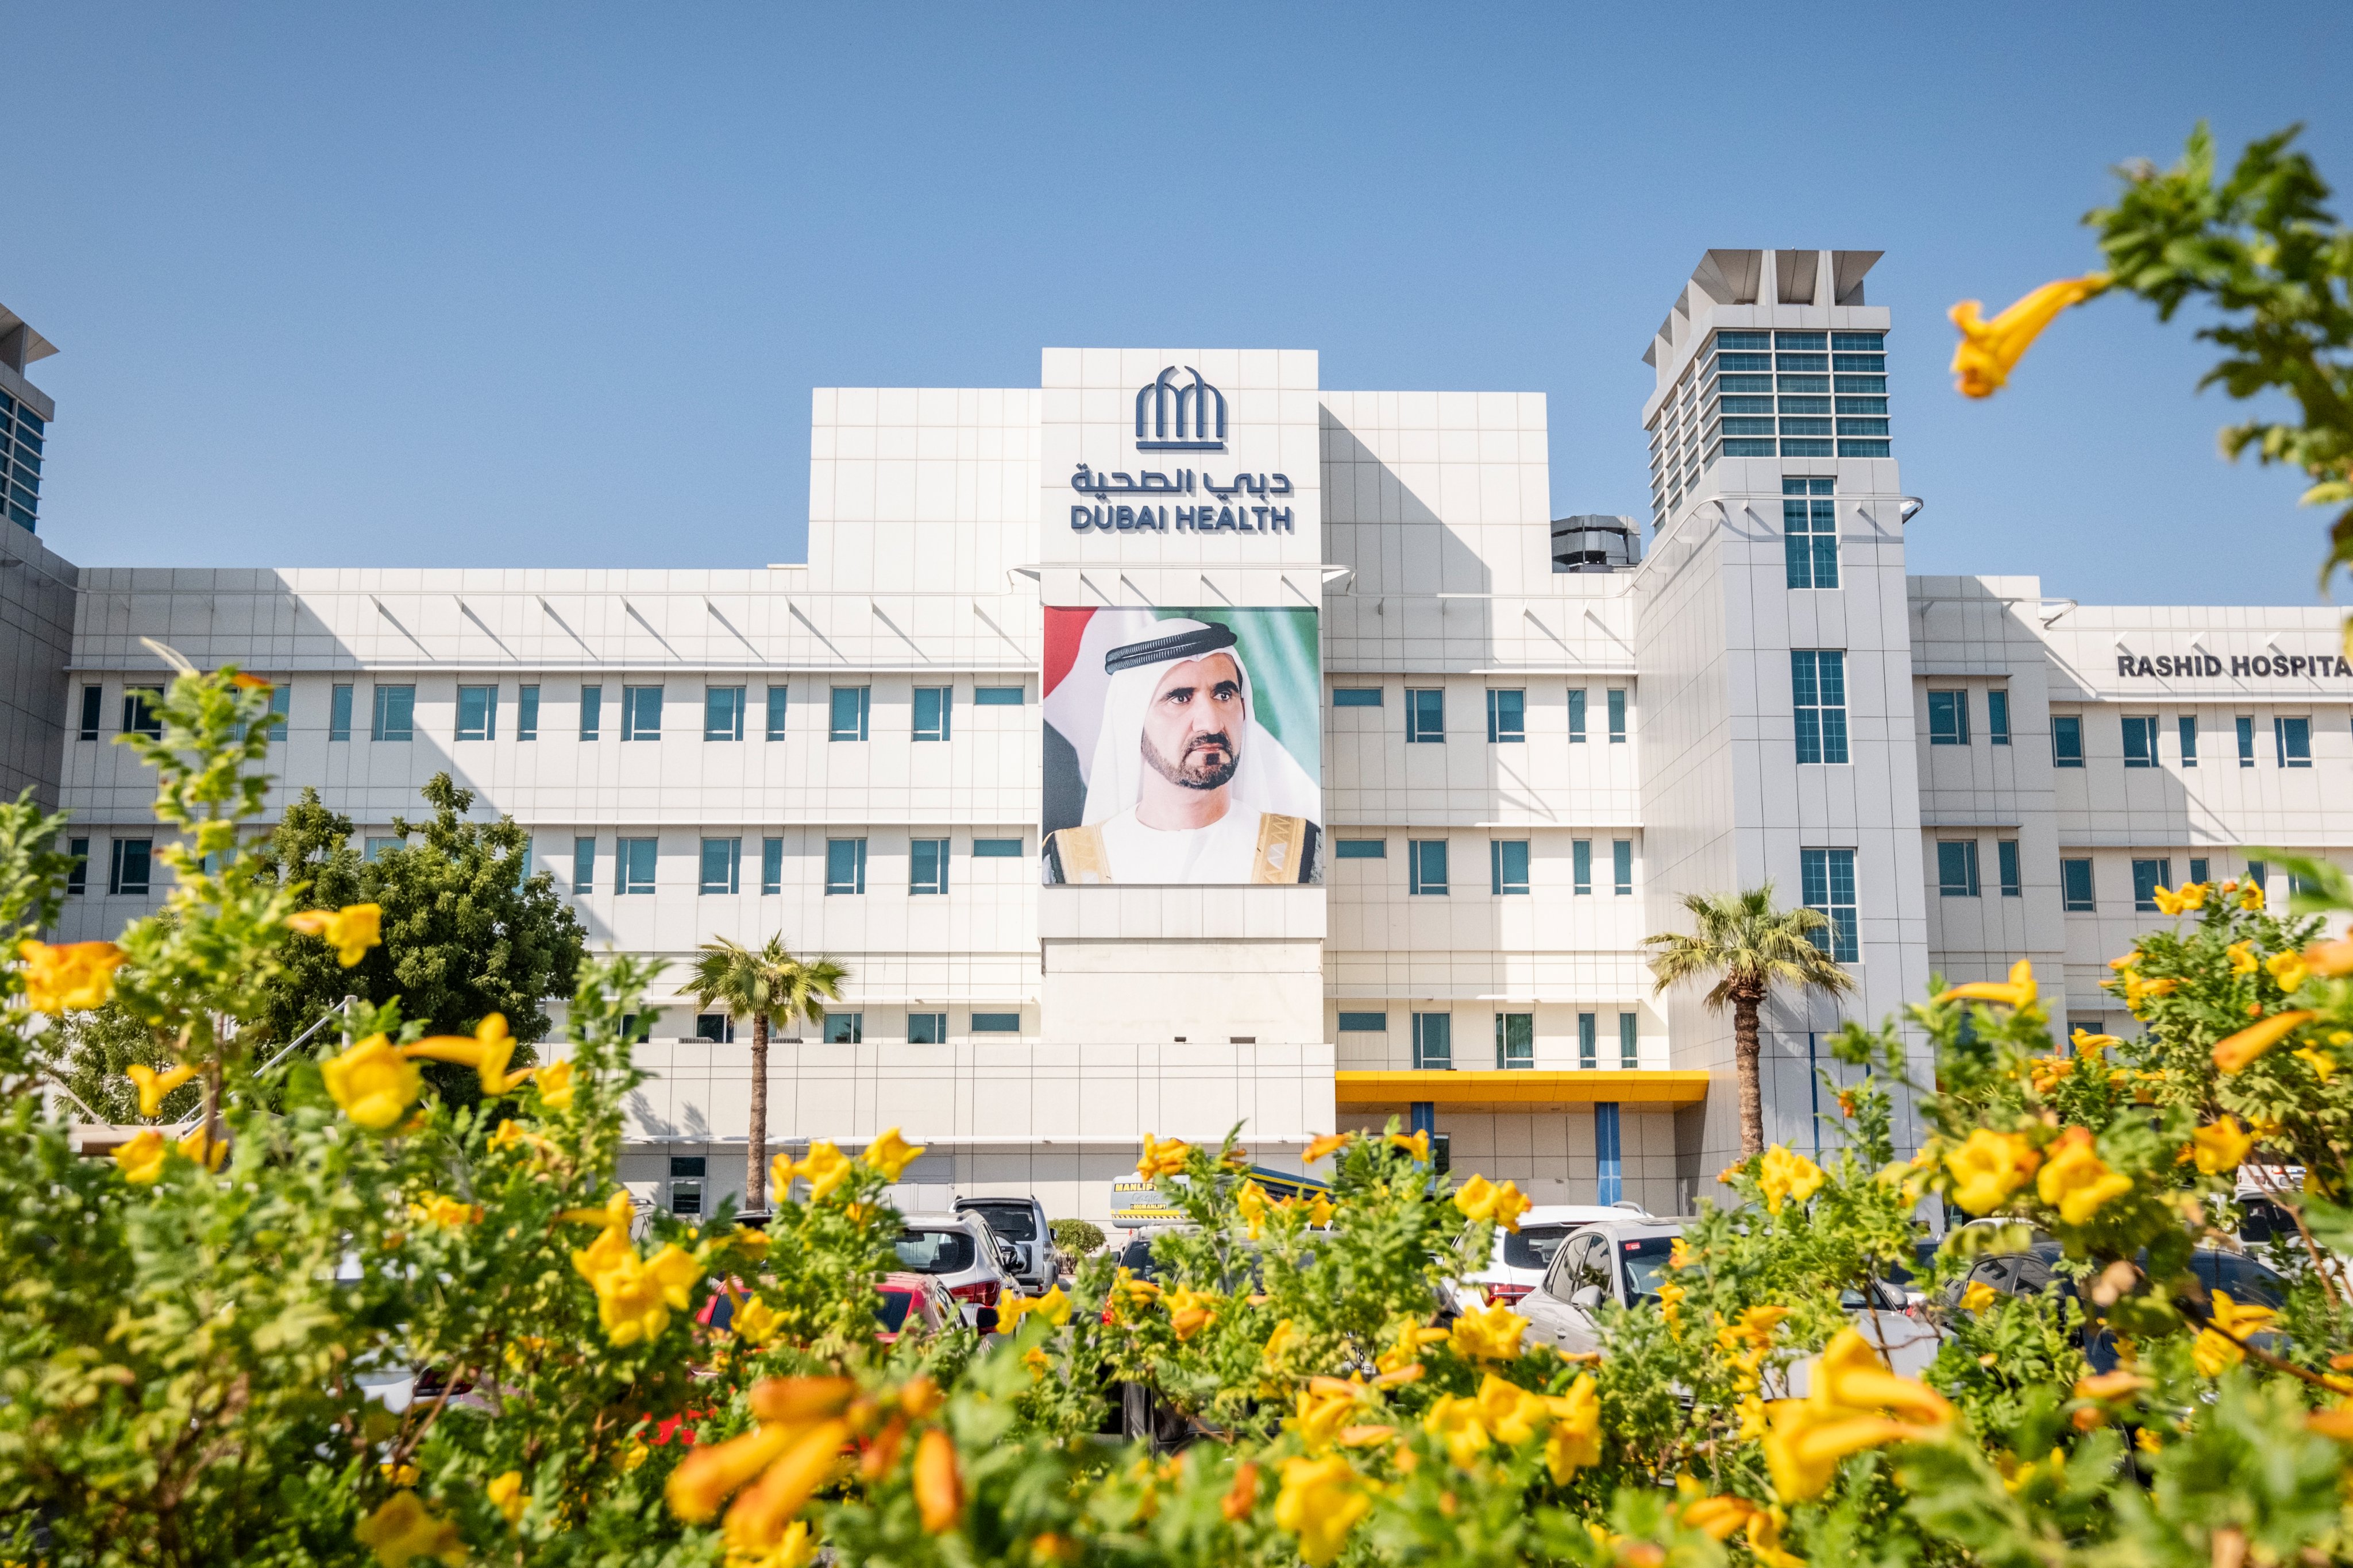 Hamdan bin Mohammed approves the new brand identity for ‘Dubai Health’